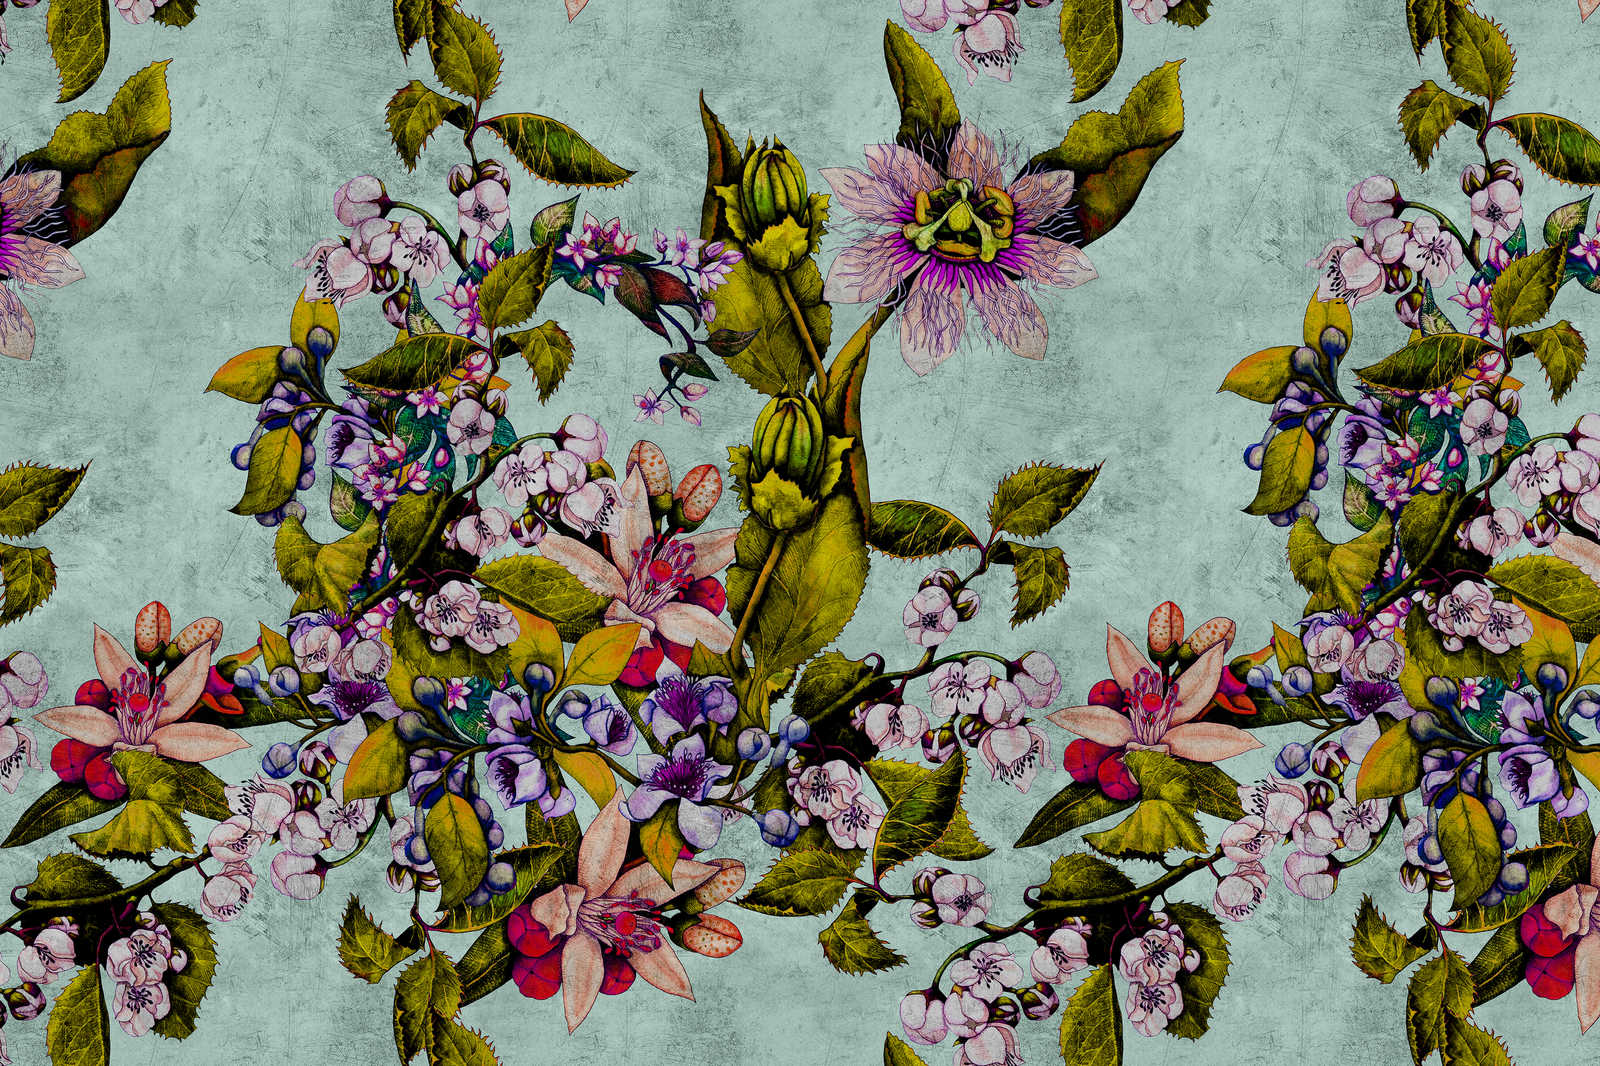             Tropical Passion 2 - Quadro su tela con fiori e boccioli - 1,20 m x 0,80 m
        